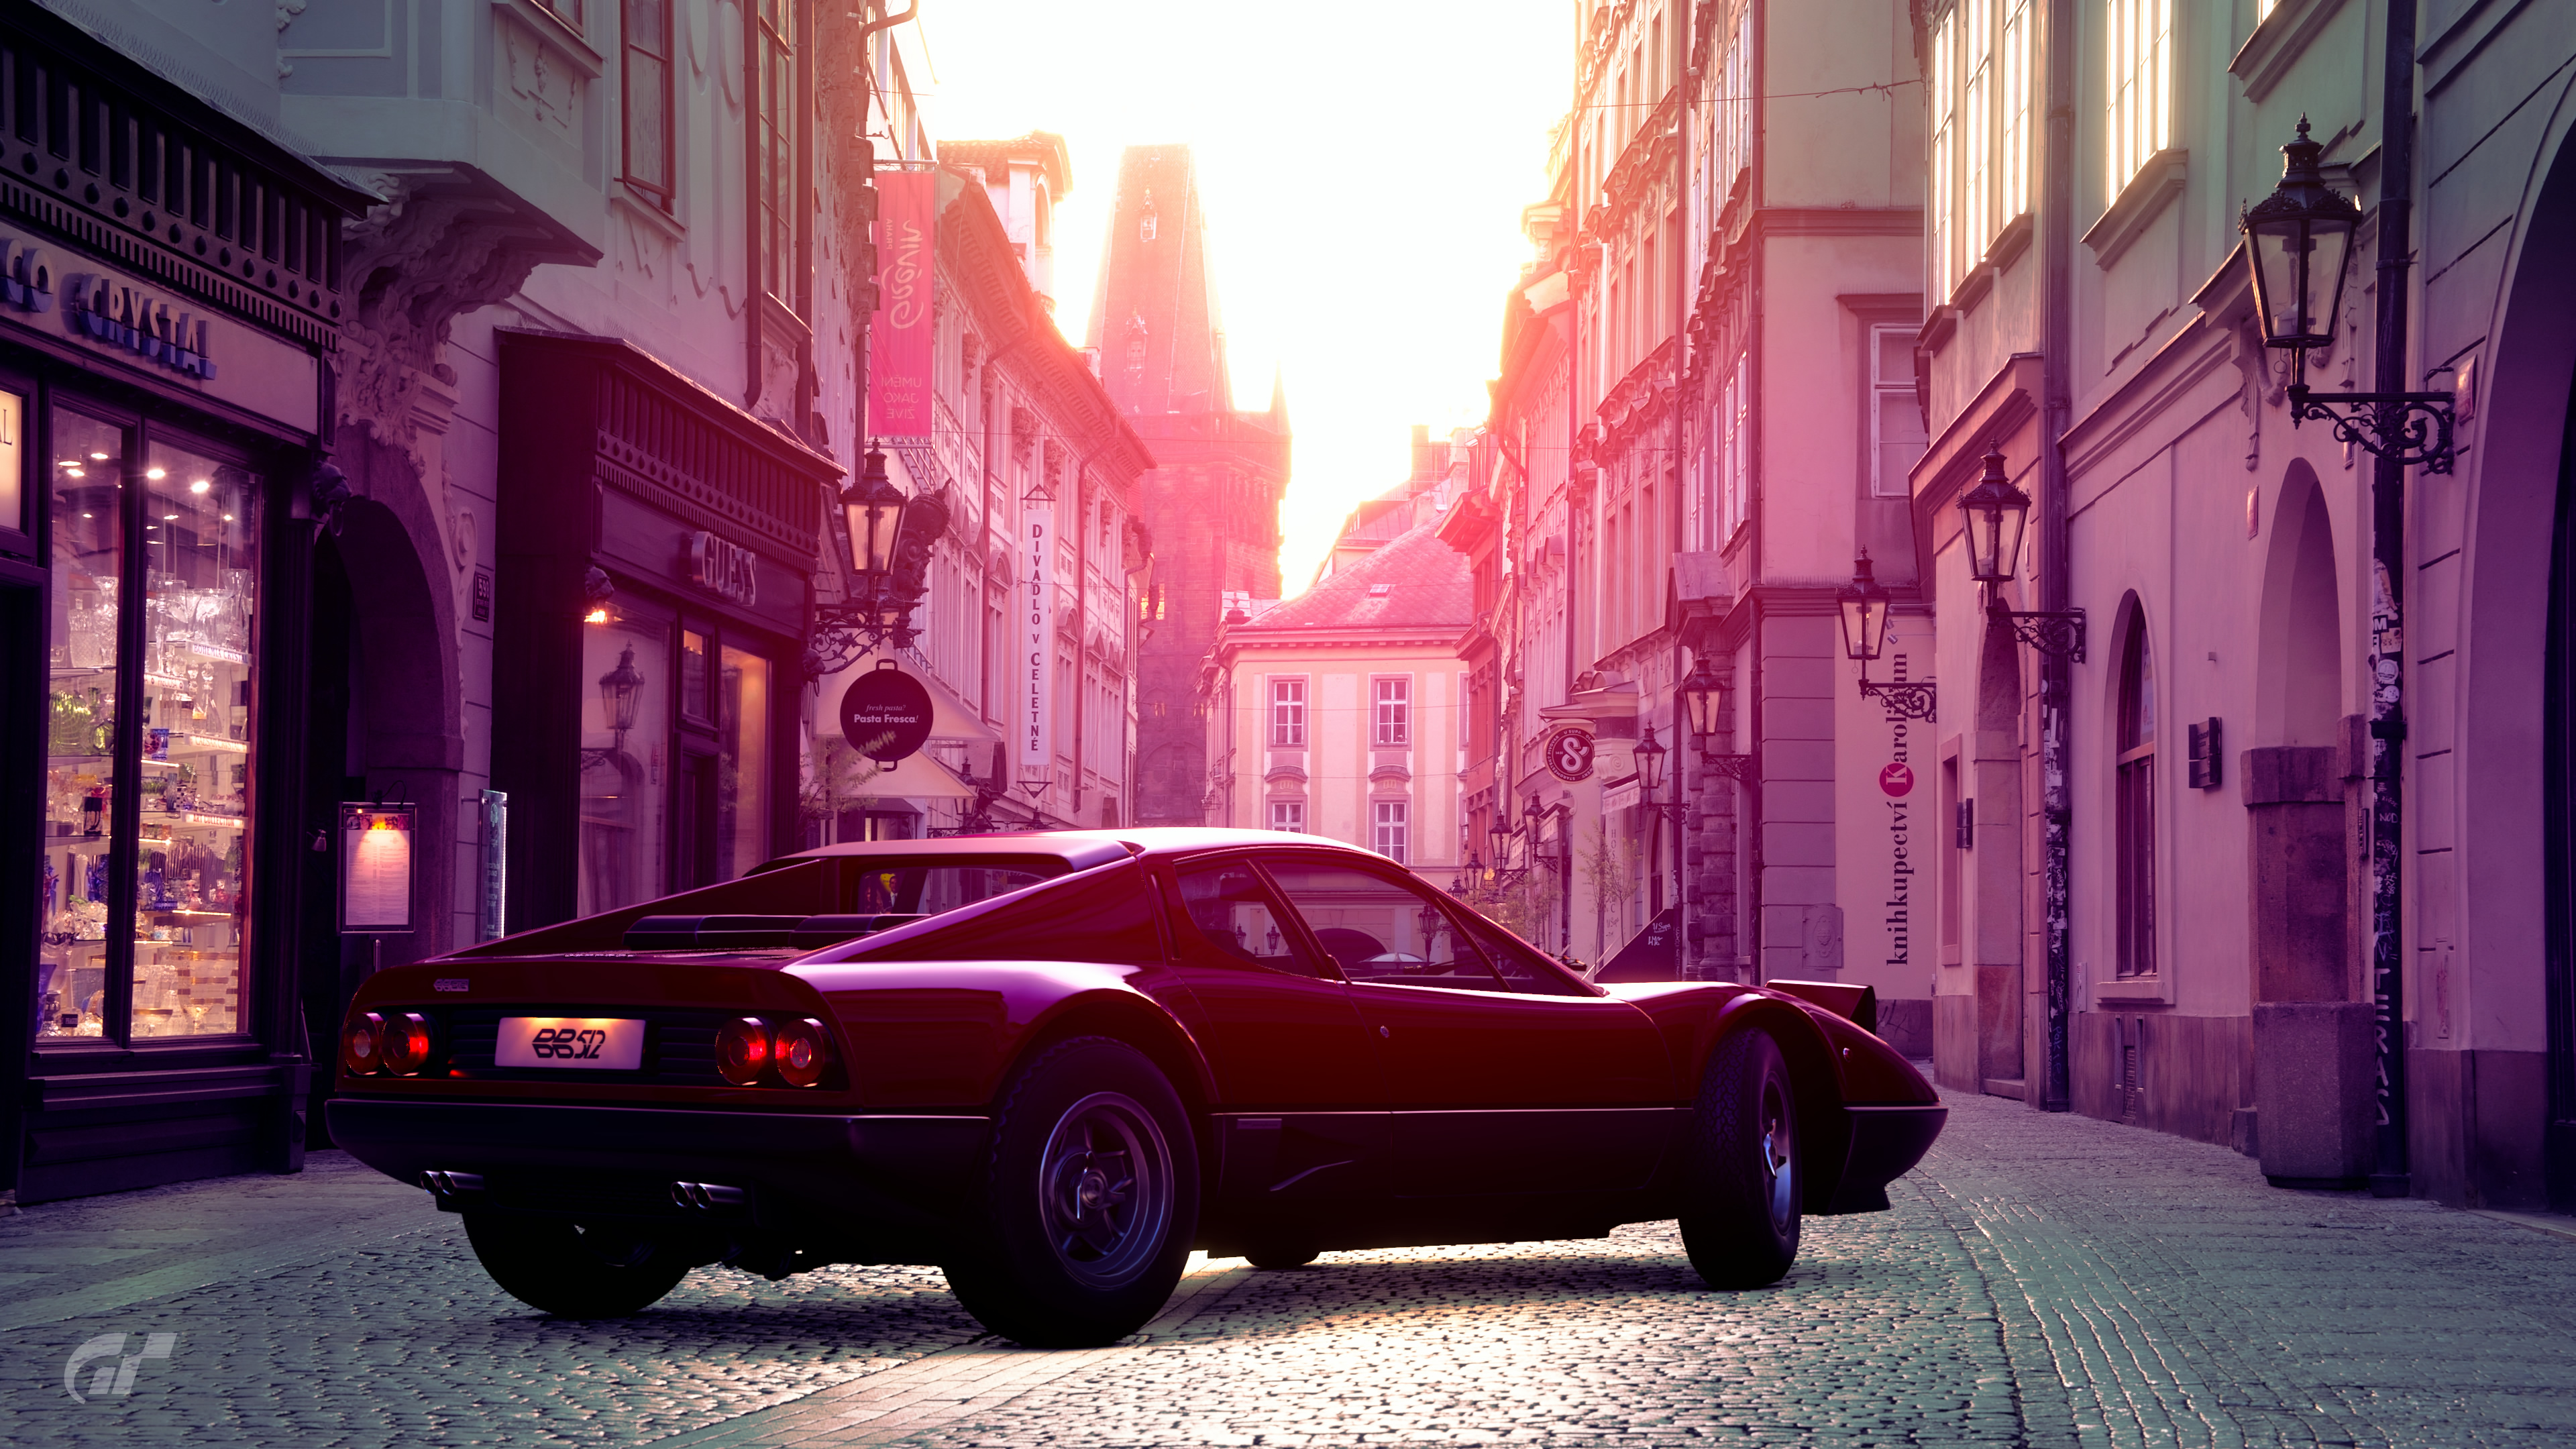 HD wallpaper: Ferrari emblem, car, close-up, pink color, no people, indoors  | Wallpaper Flare